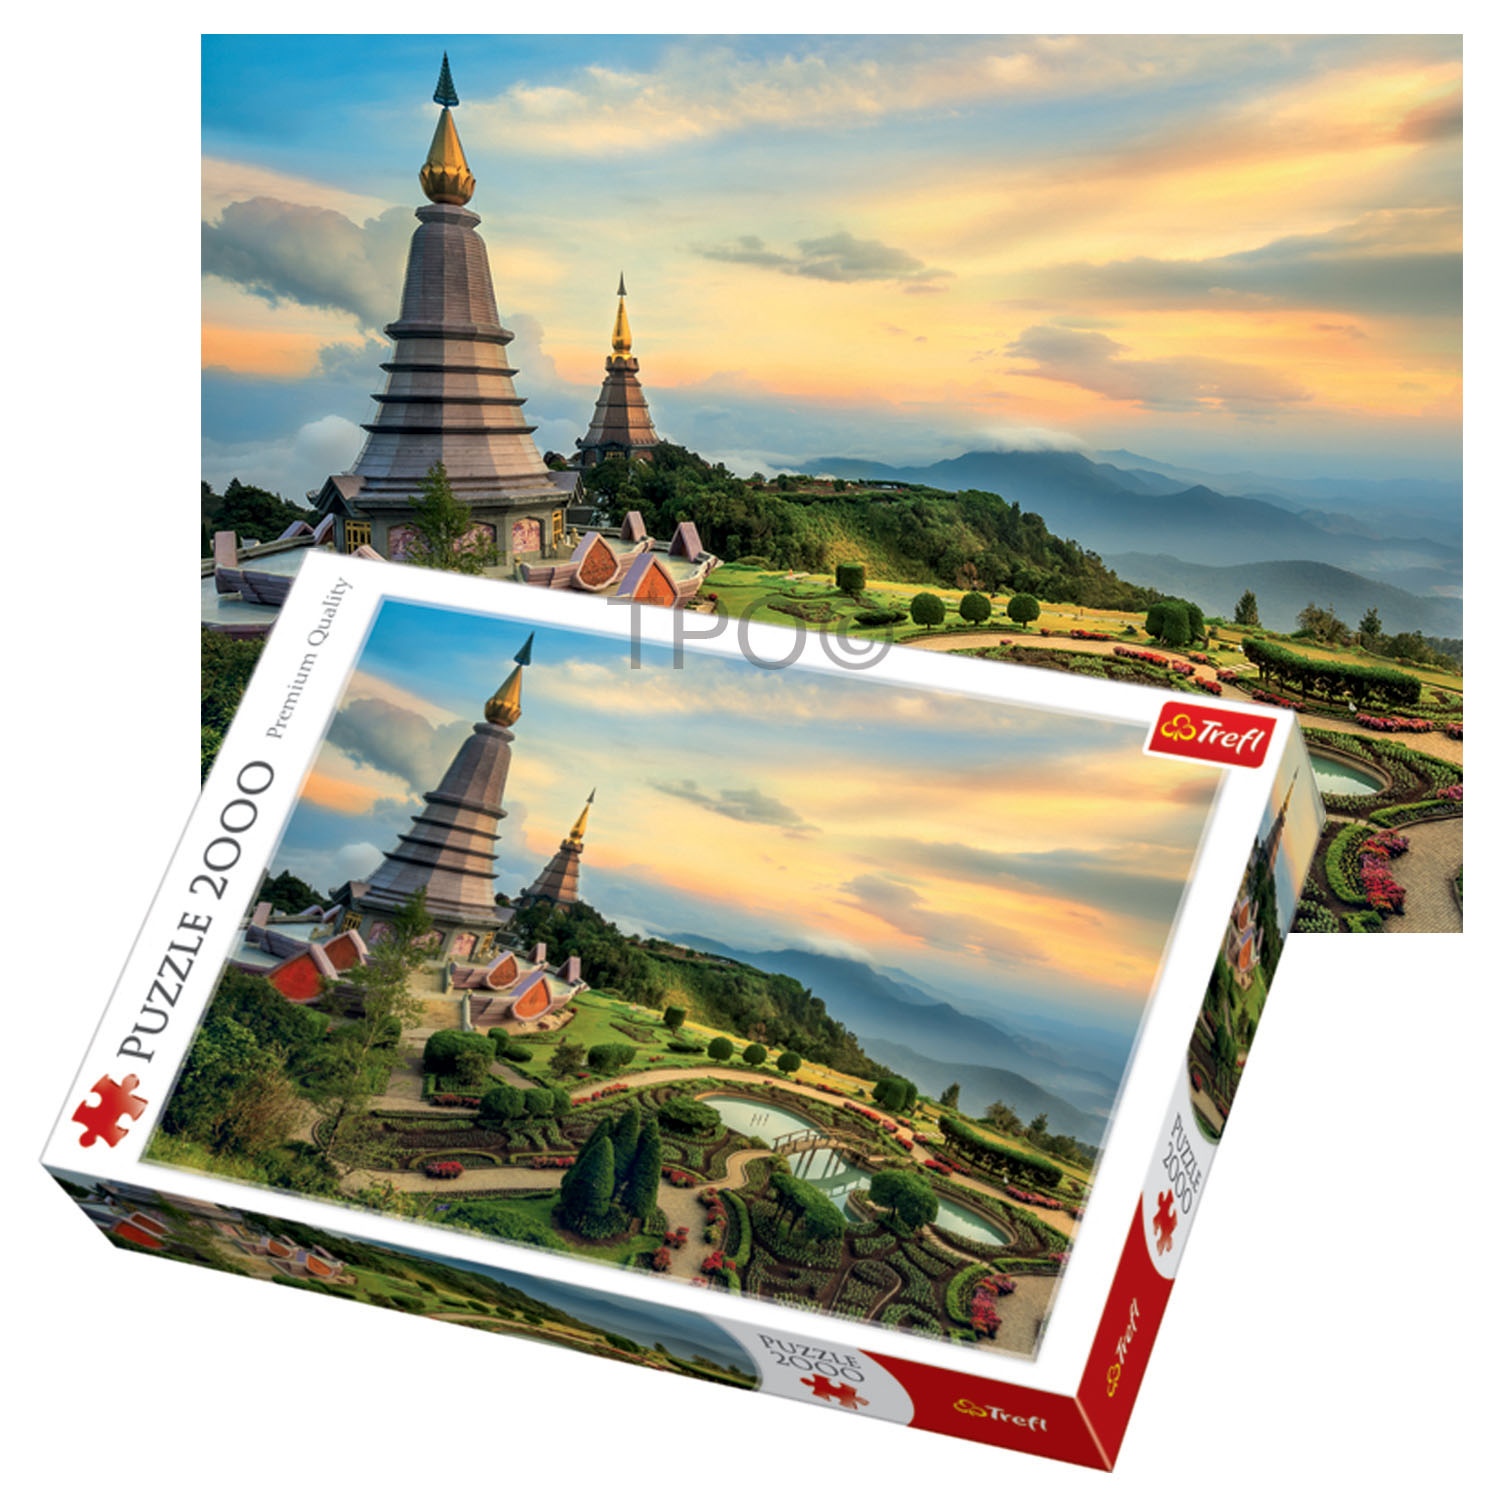 Trefl Thailand Premium Quality 2000 Piece Puzzle